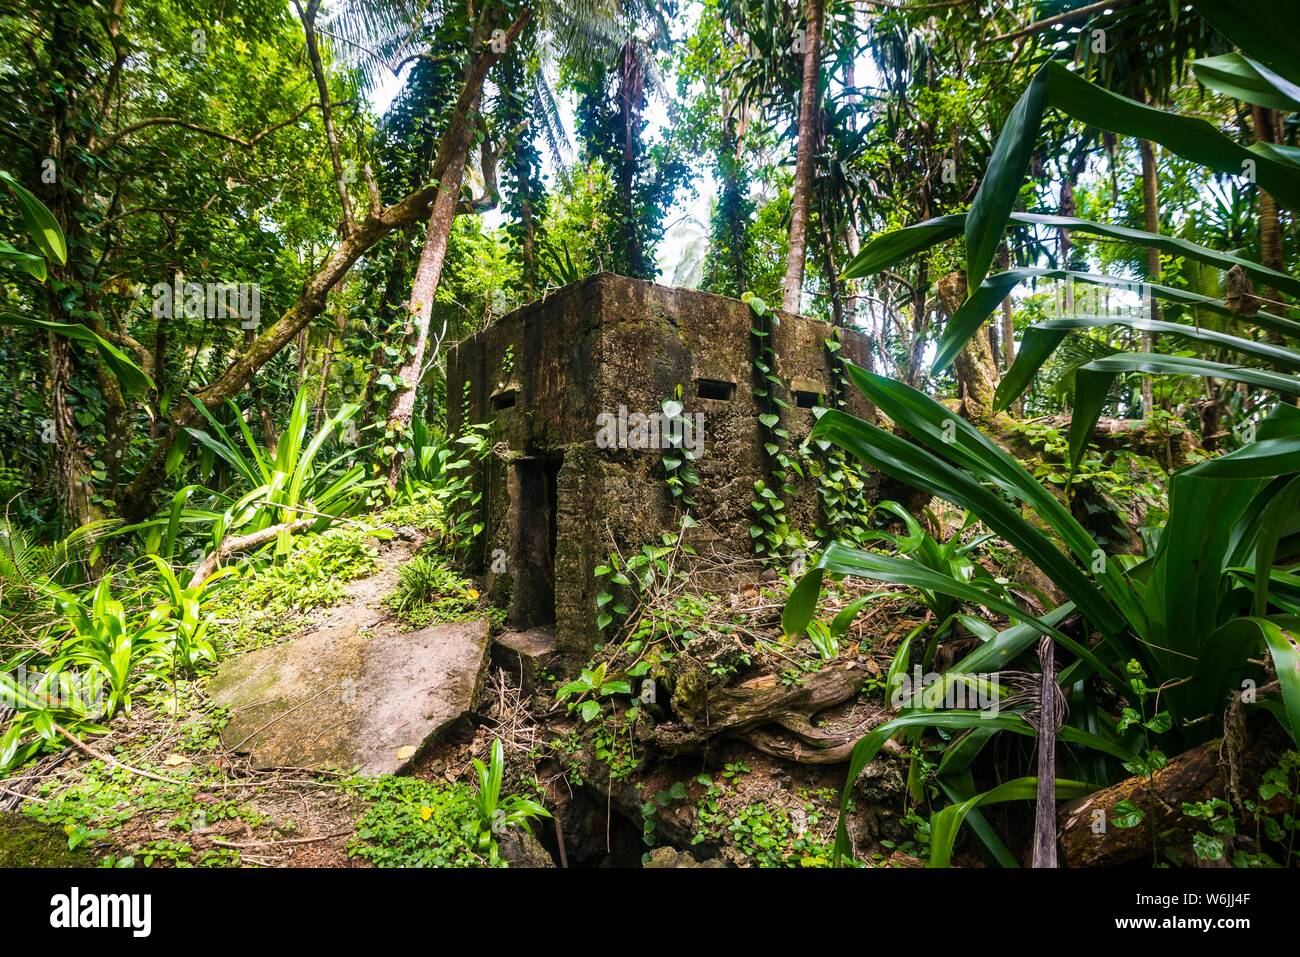 Japanische Bunker vom Dschungel überwuchert, Kavieng, Neuirland, Papua-Neuguinea Stockfoto